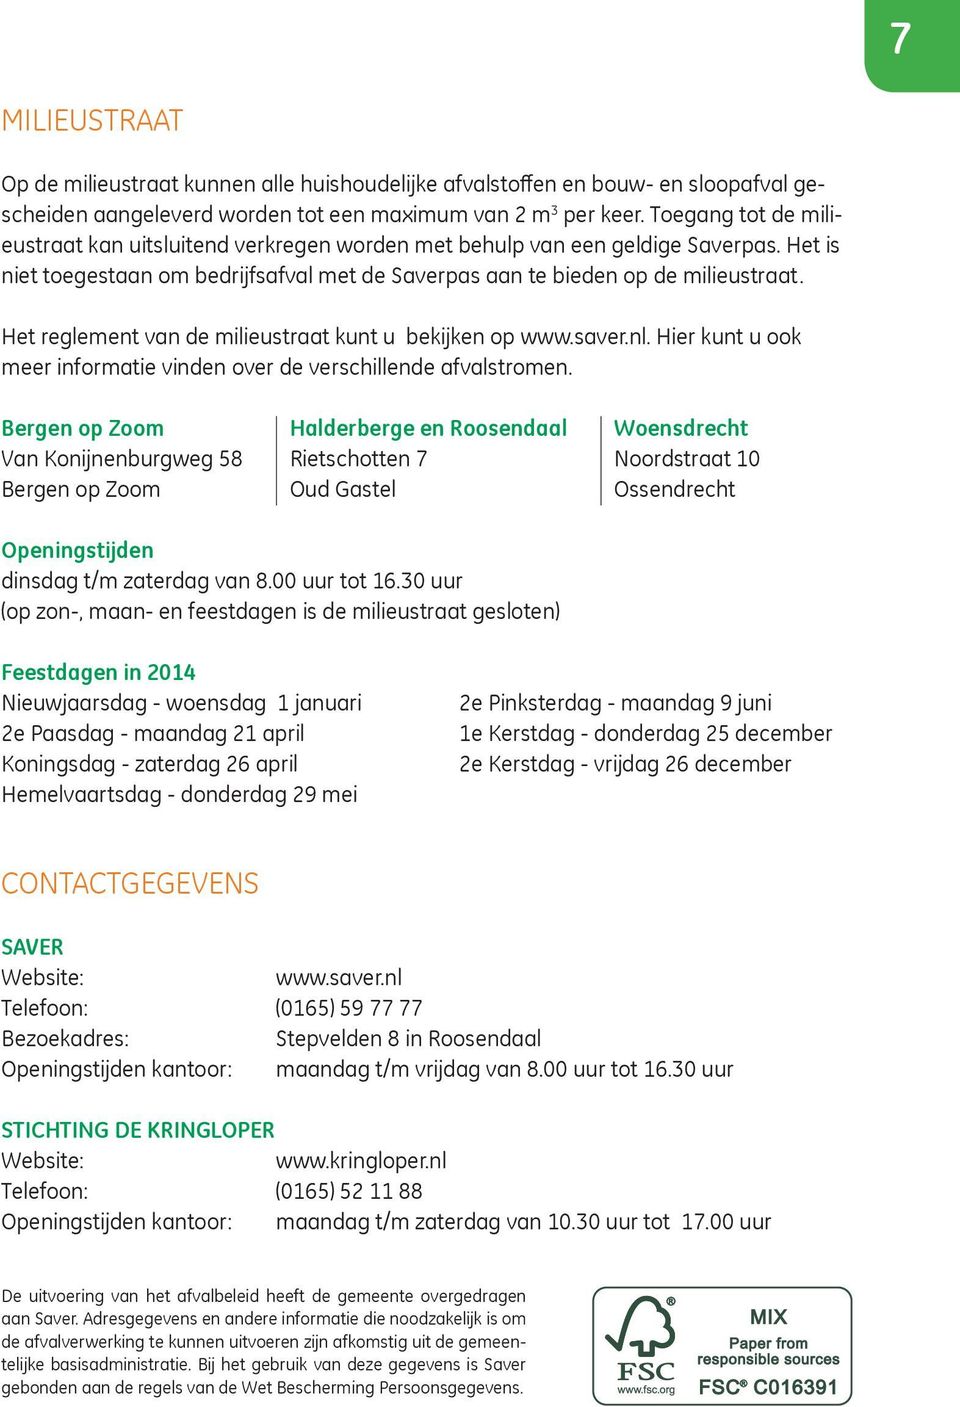 Het reglement van de milieustraat kunt u bekijken op www.saver.nl. Hier kunt u ook meer informatie vinden over de verschillende afvalstromen.